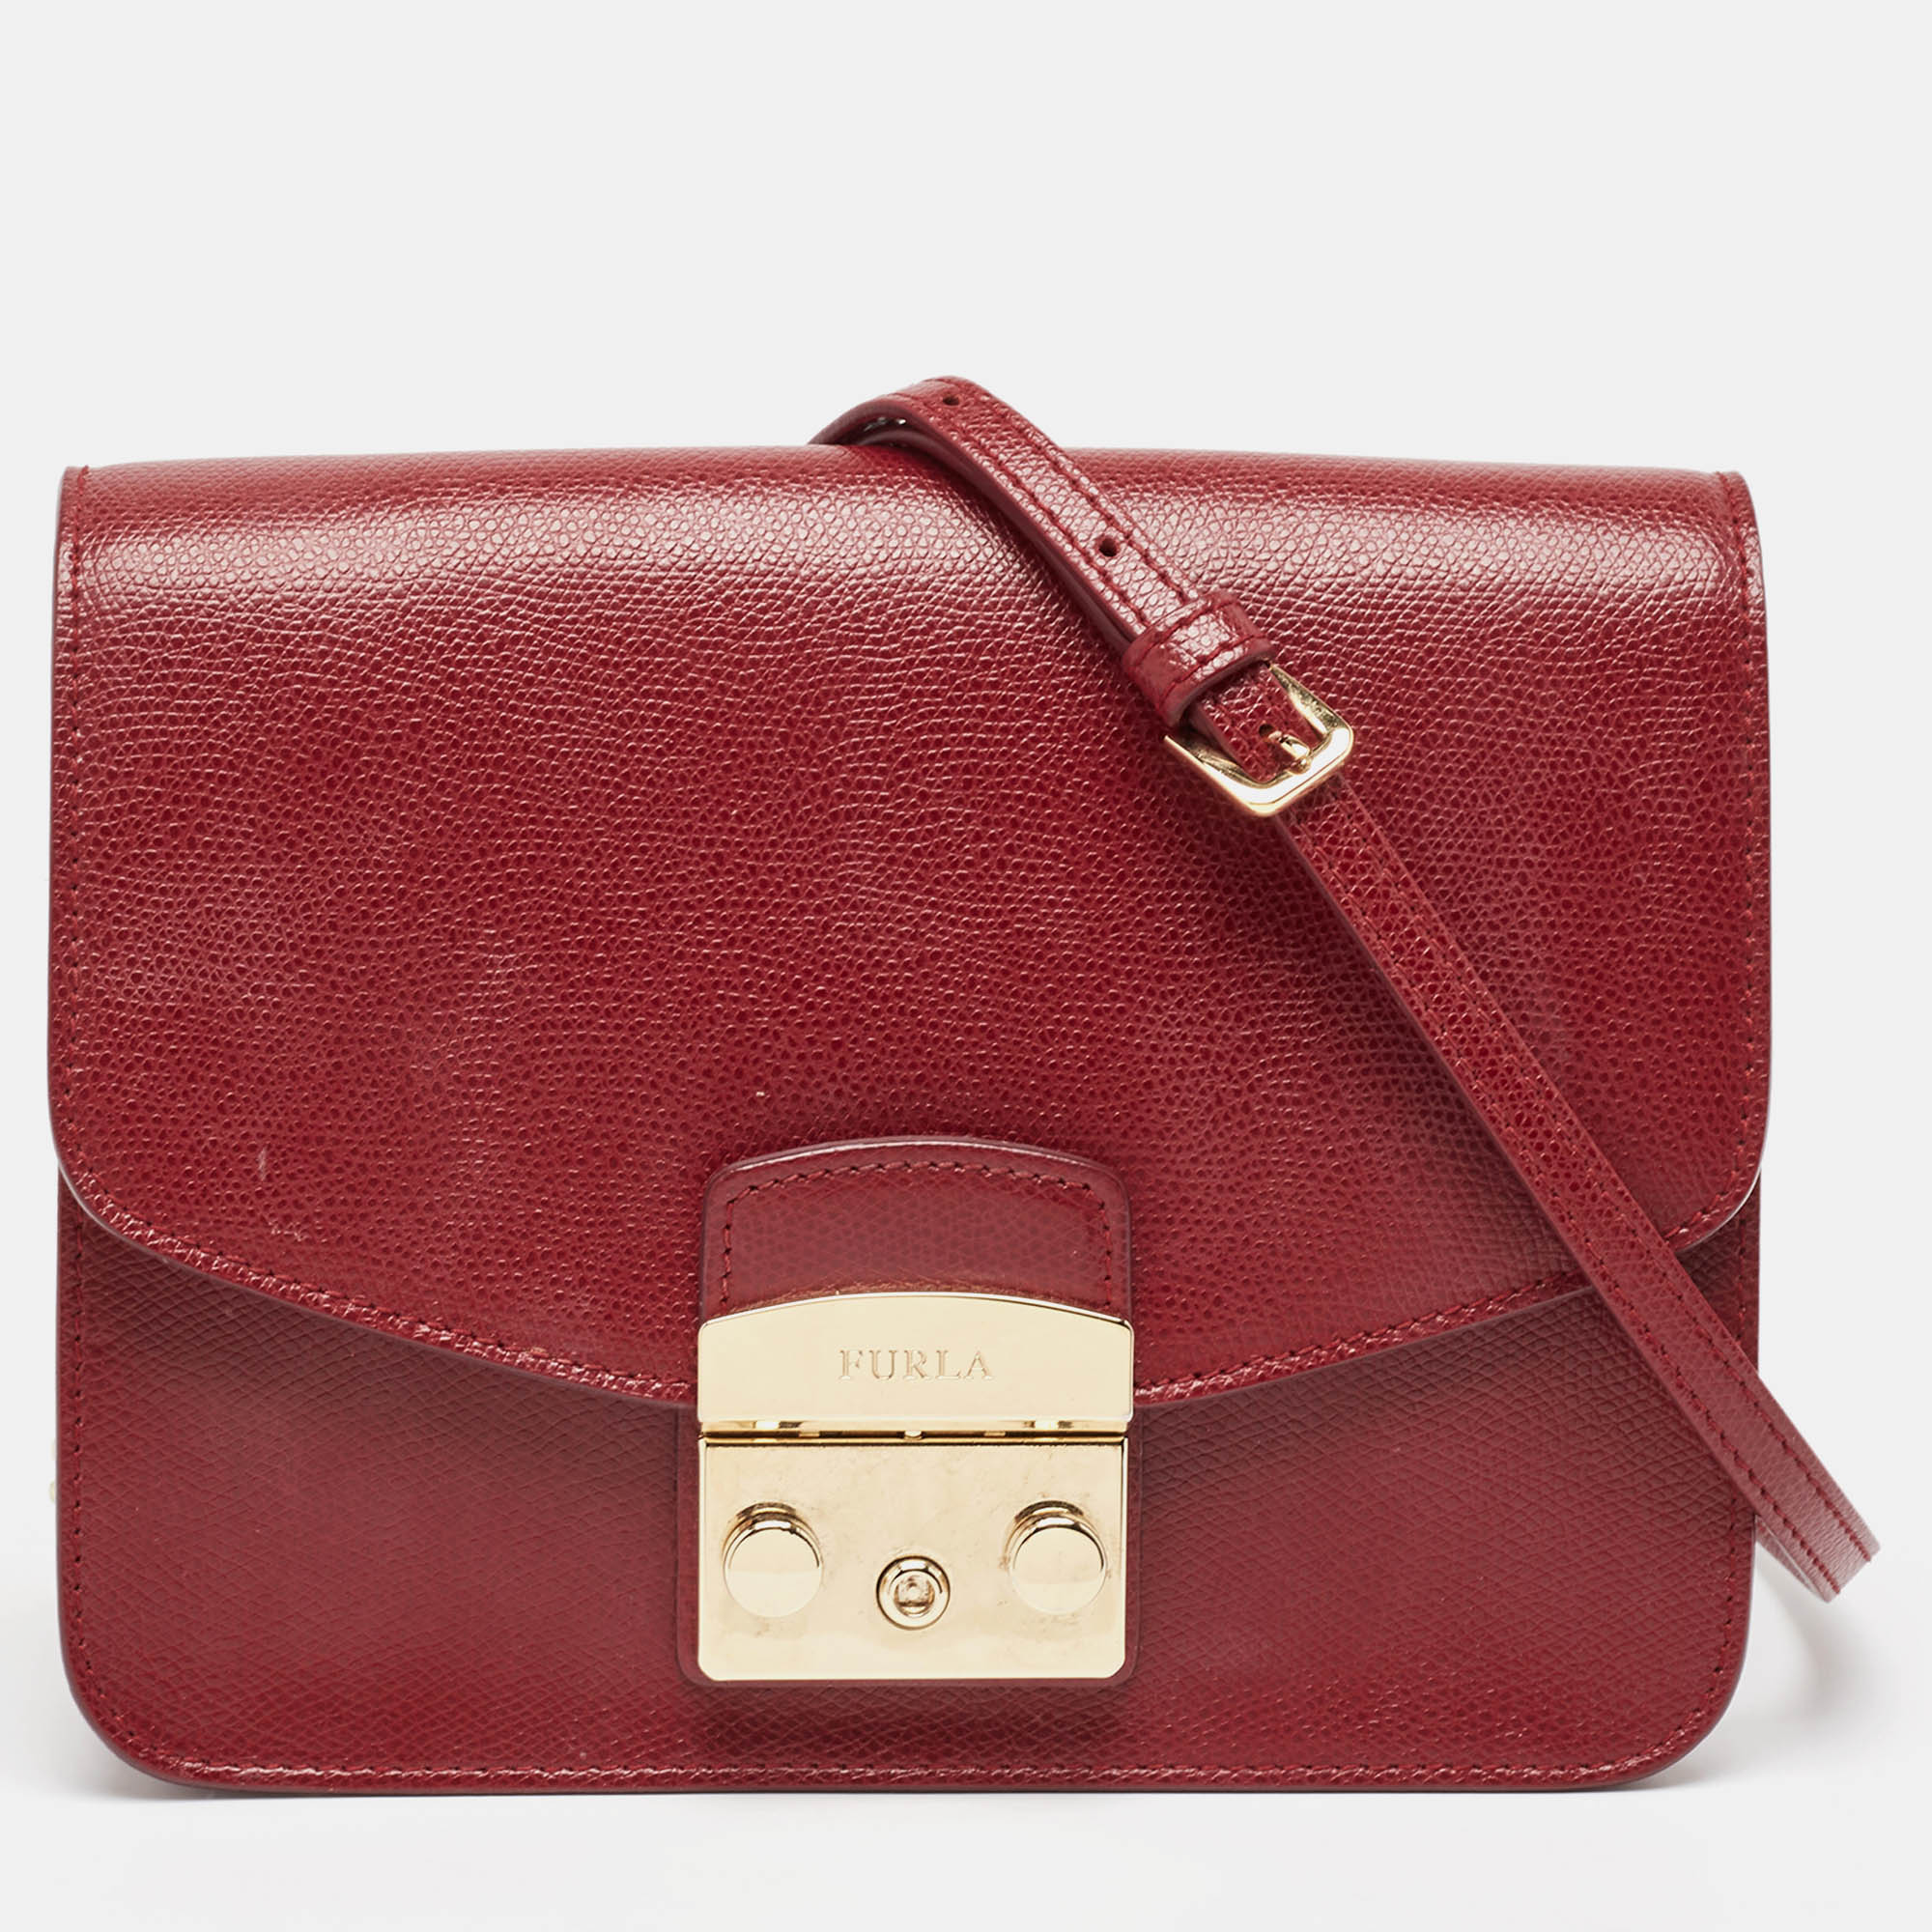 Pre-owned Furla Red Leather Metropolis Shoulder Bag